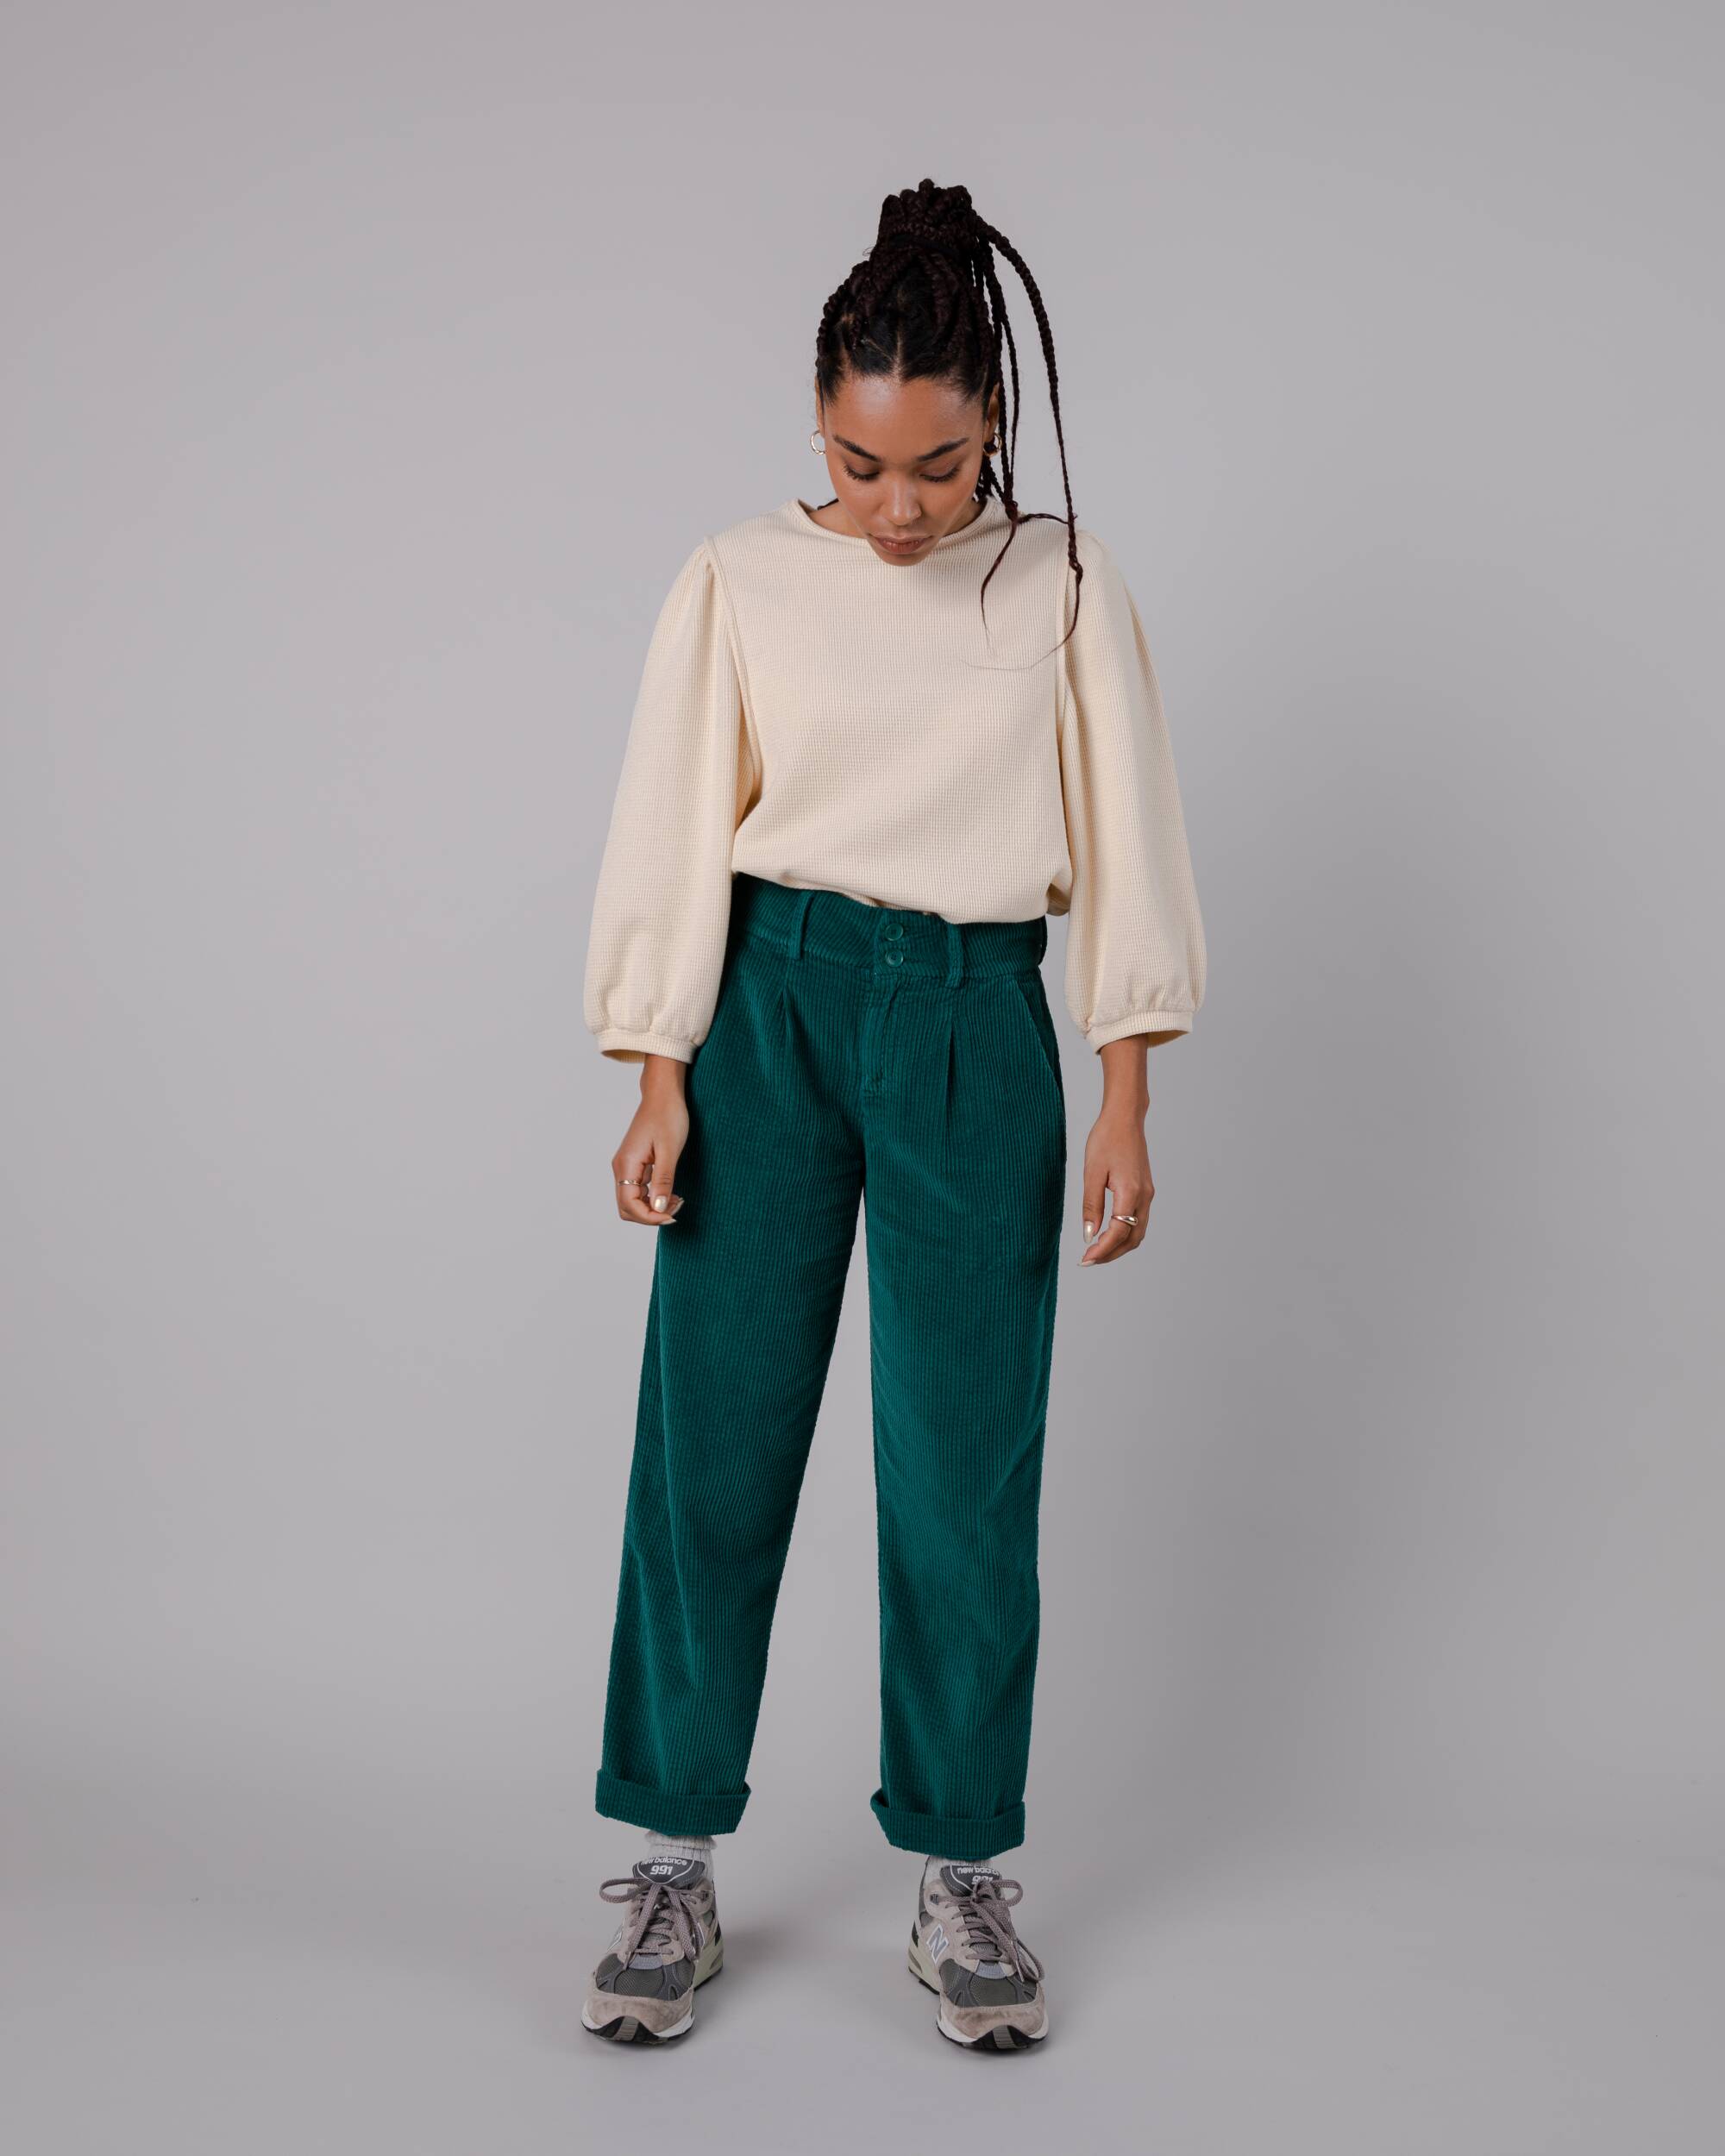 Pantalon plissé en velours côtelé vert en coton biologique de Brava Fabrics